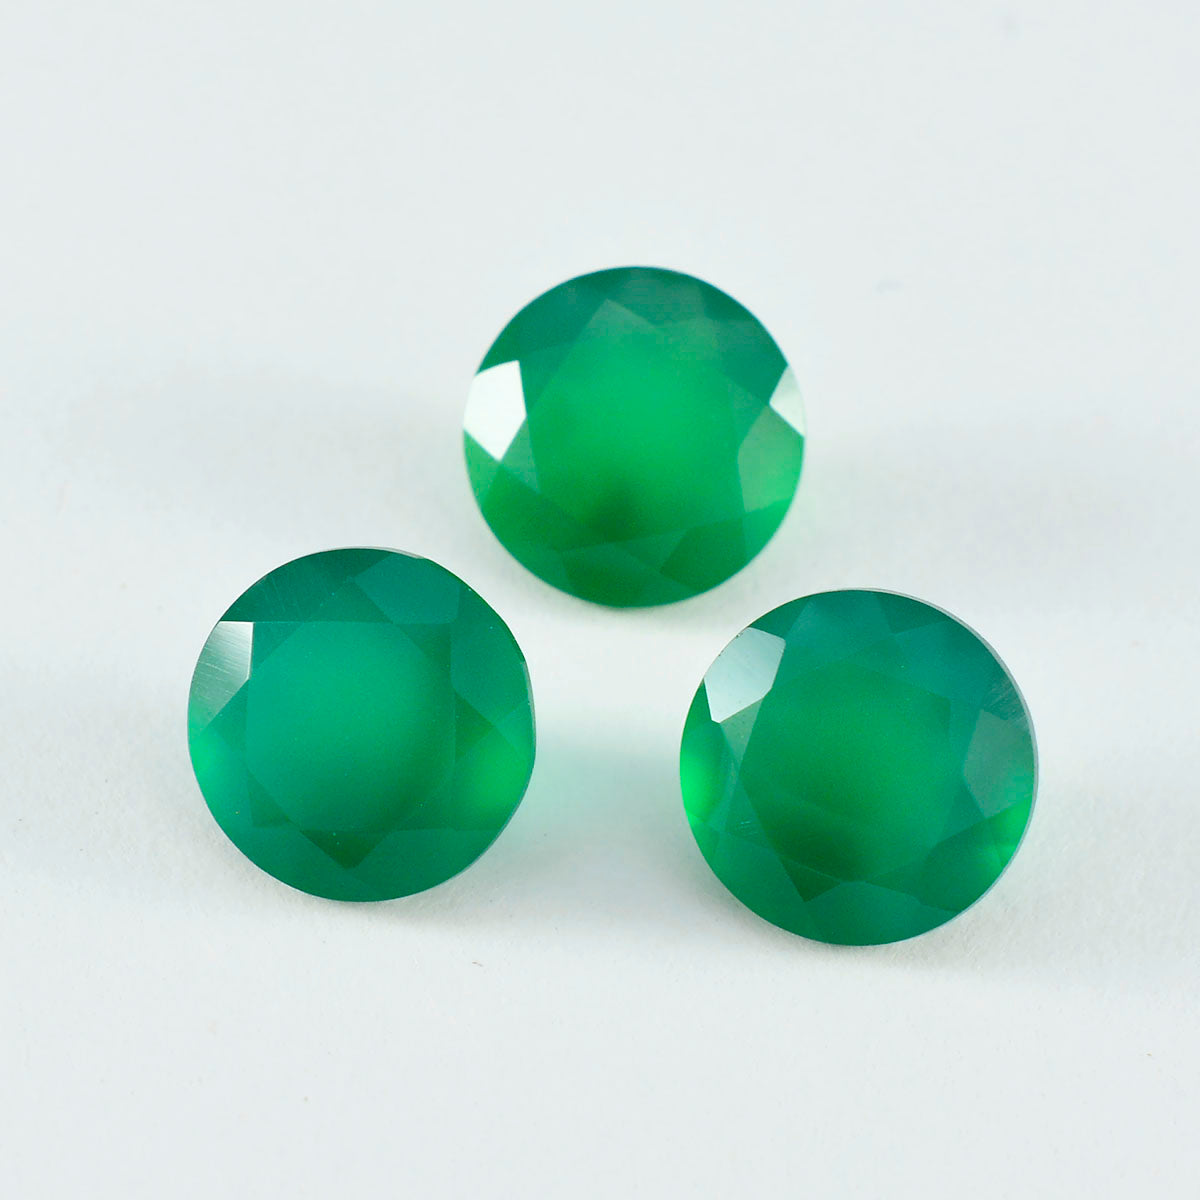 Riyogems 1 Stück natürlicher grüner Onyx, facettiert, 8 x 8 mm, runde Form, wunderschöner Qualitätsedelstein